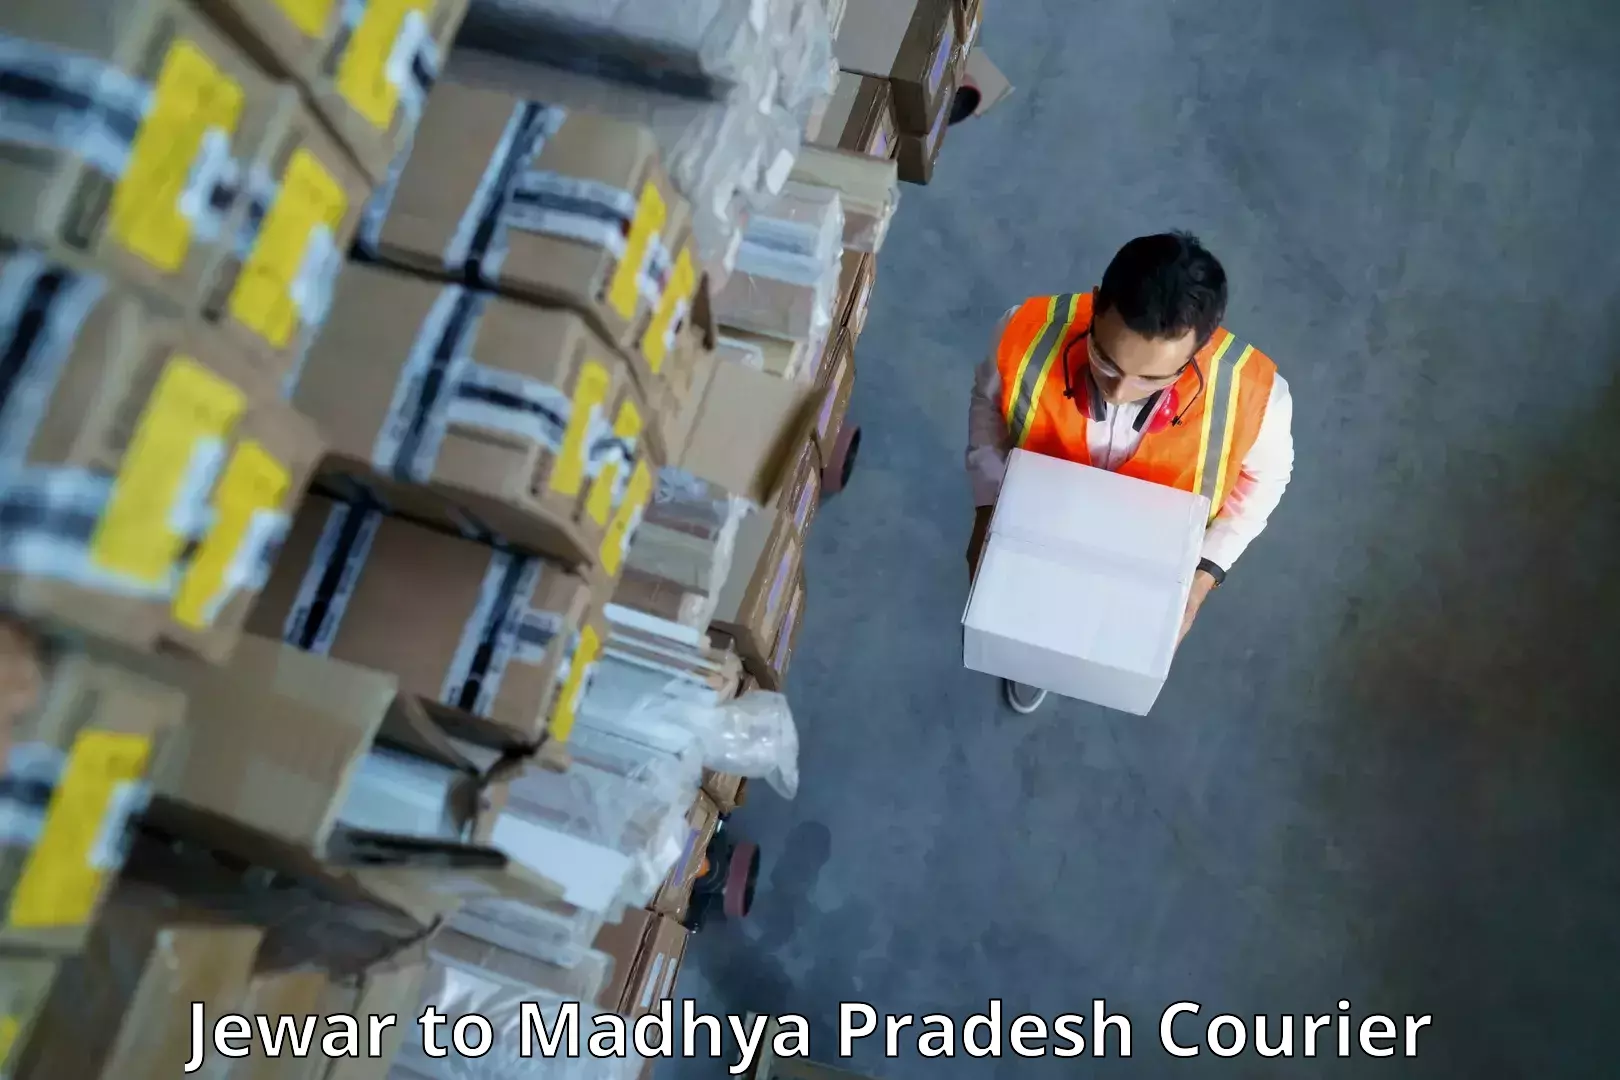 Next-generation courier services Jewar to Alirajpur